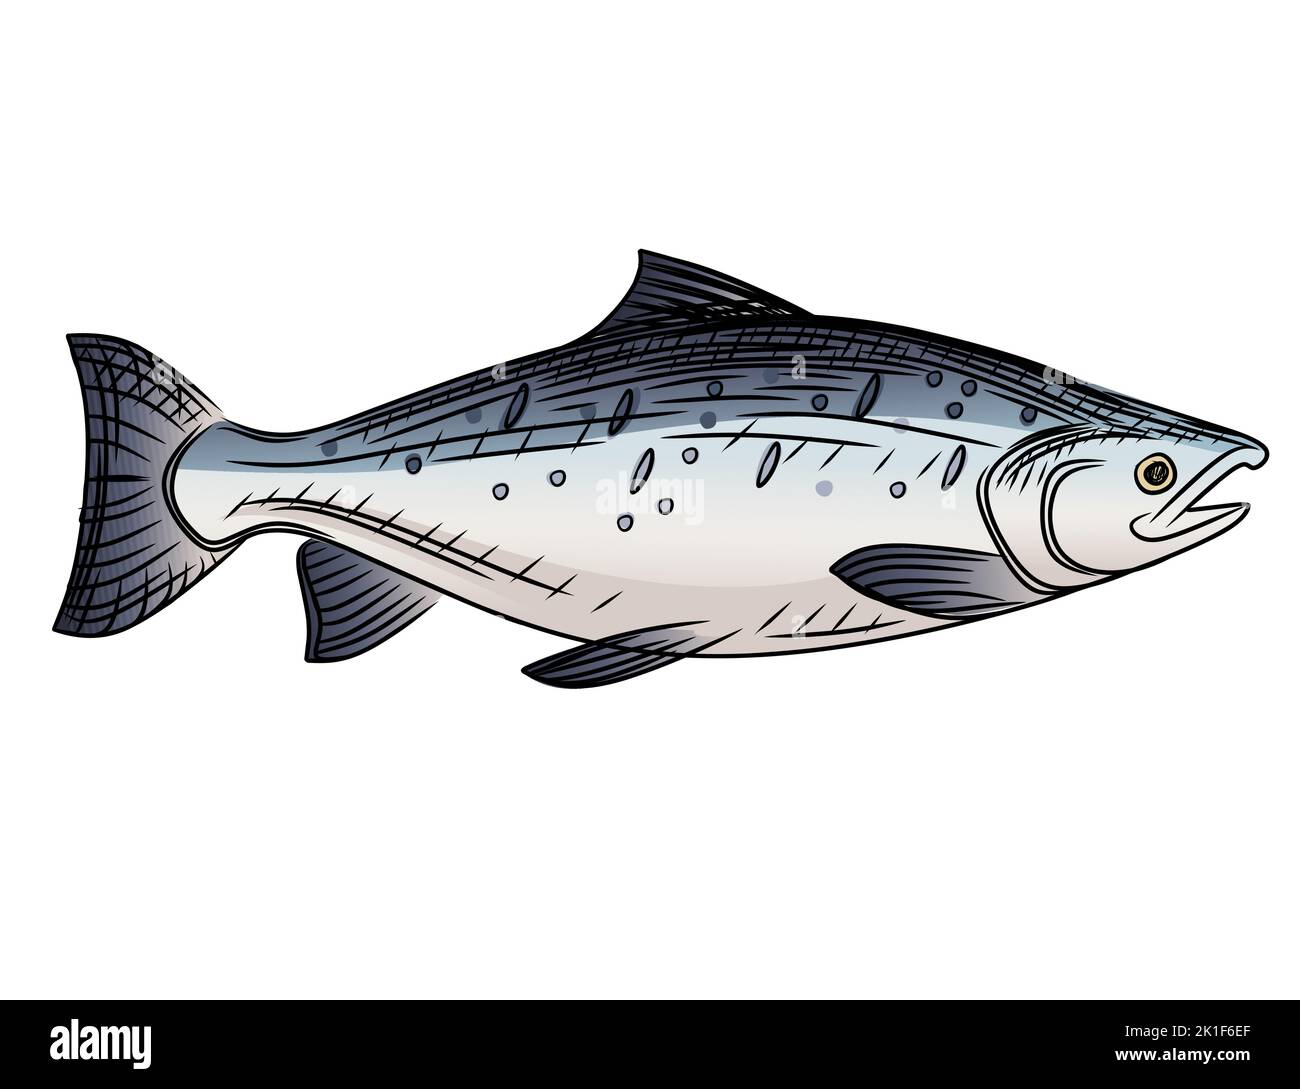 Saumon poisson dessin animé animal dessin illustration vectorielle isolée sur fond blanc Illustration de Vecteur